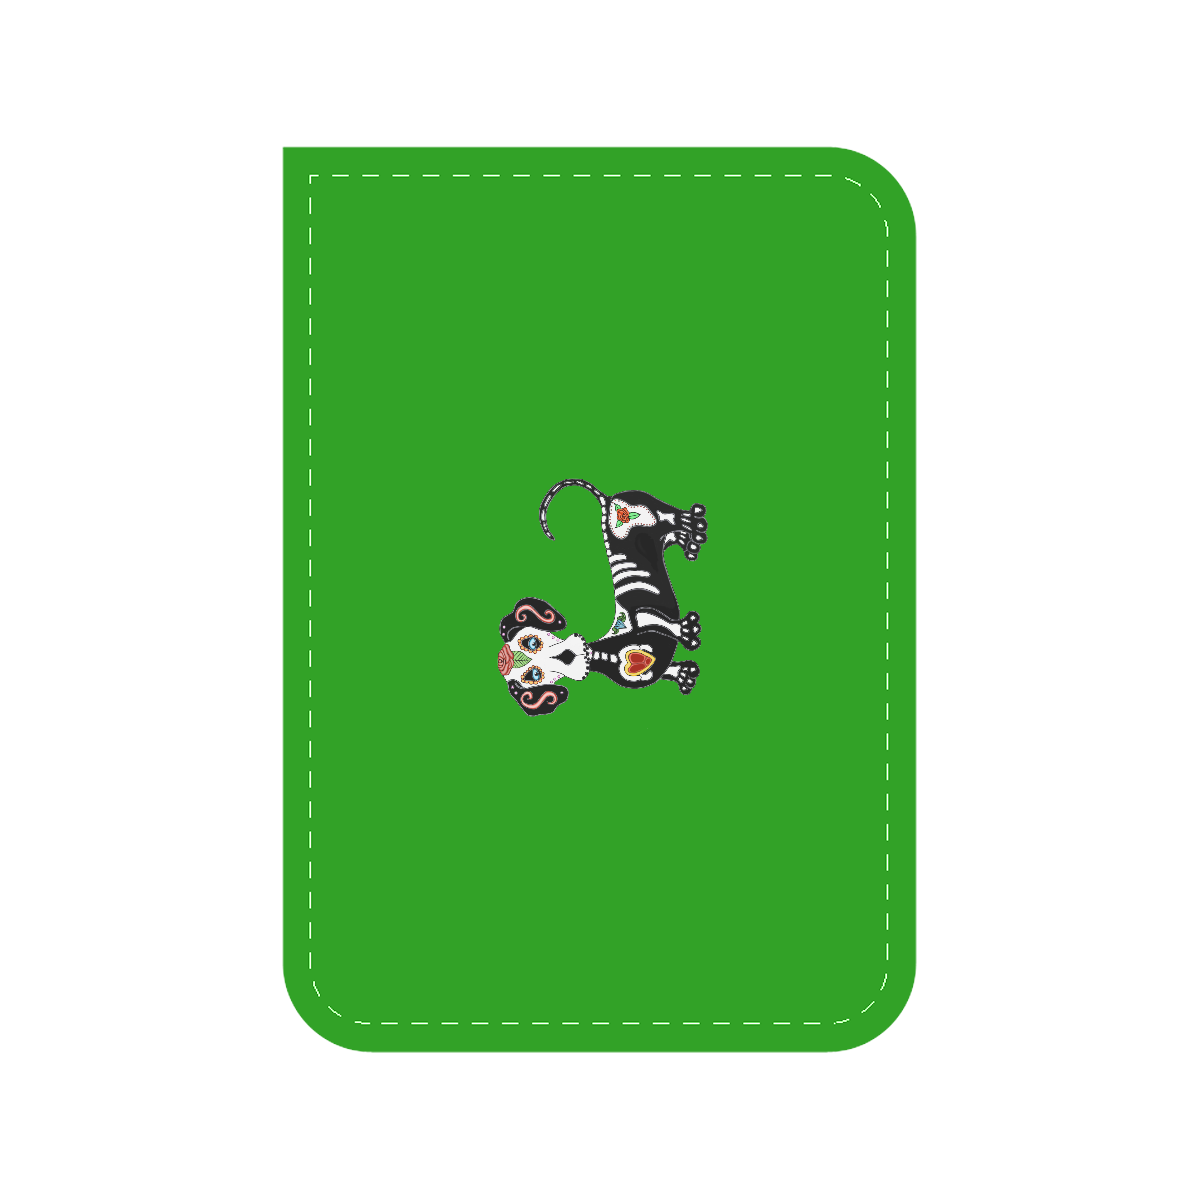 Dachshund Sugar Skull Green Car Seat Belt Cover 7''x10''